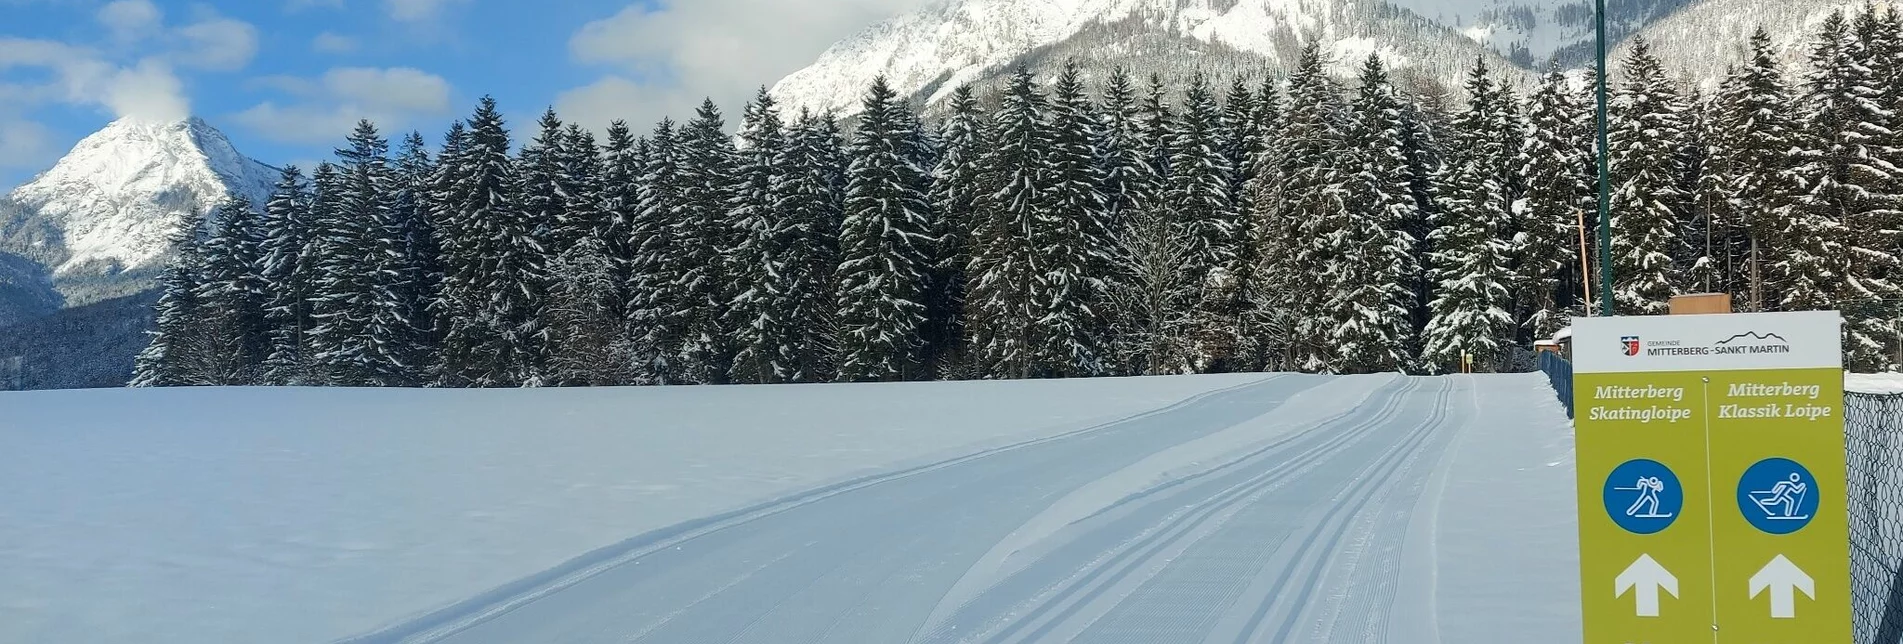 Cross-Country Skiing Mitterberg Skating XC Trail - Touren-Impression #1 | © Erlebnisregion Schladming-Dachstein